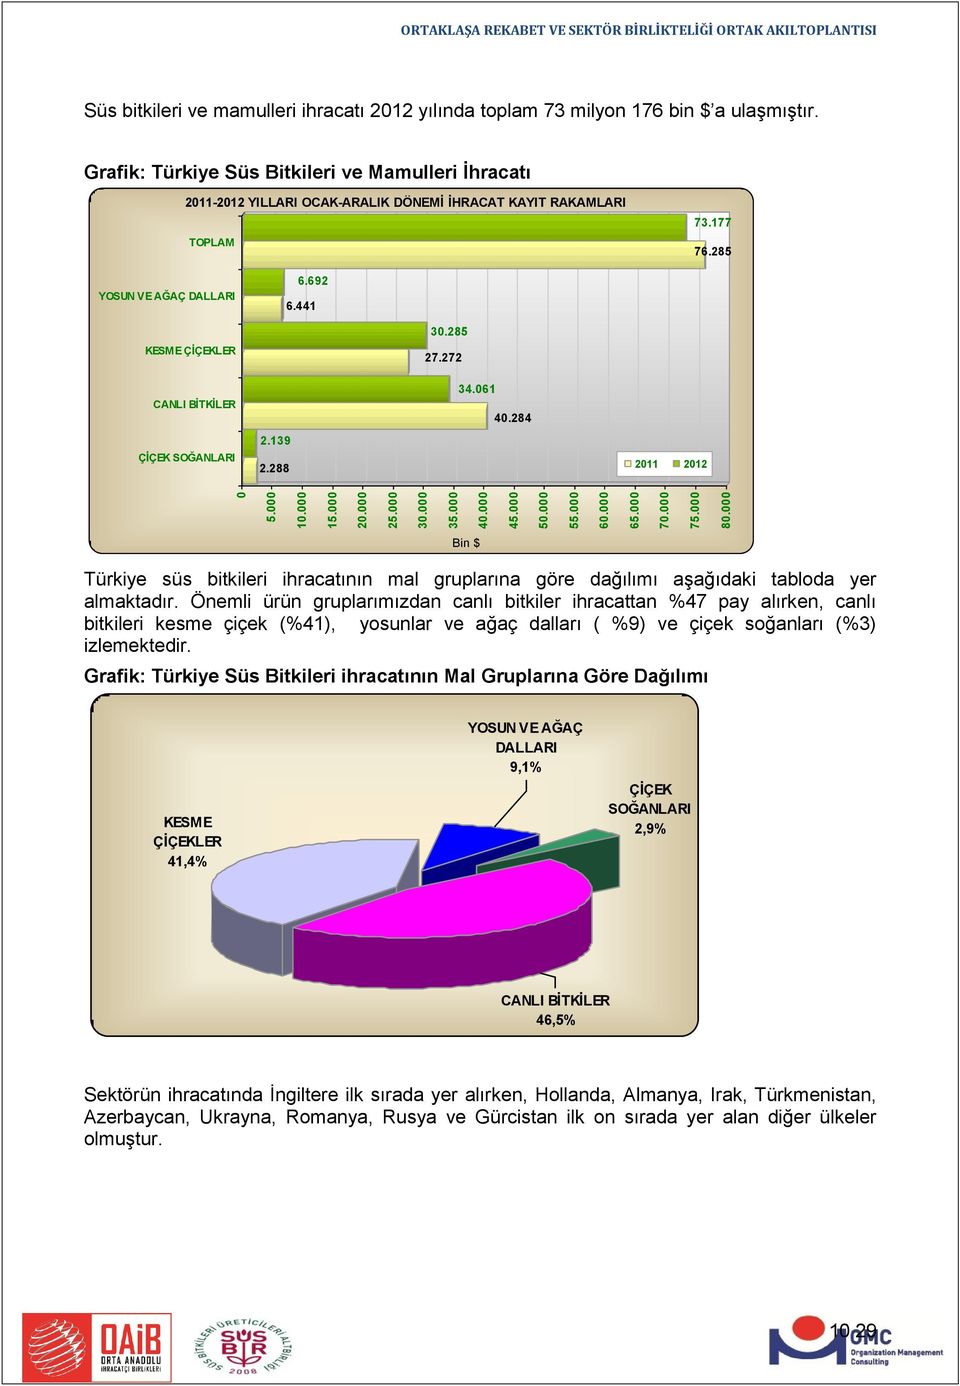 Grafik: Türkiye Süs Bitkileri ve Mamulleri İhracatı 2011-2012 YILLARI OCAK-ARALIK DÖNEMİ İHRACAT KAYIT RAKAMLARI TOPLAM 73.177 76.285 YOSUN VE AĞAÇ DALLARI 6.692 6.